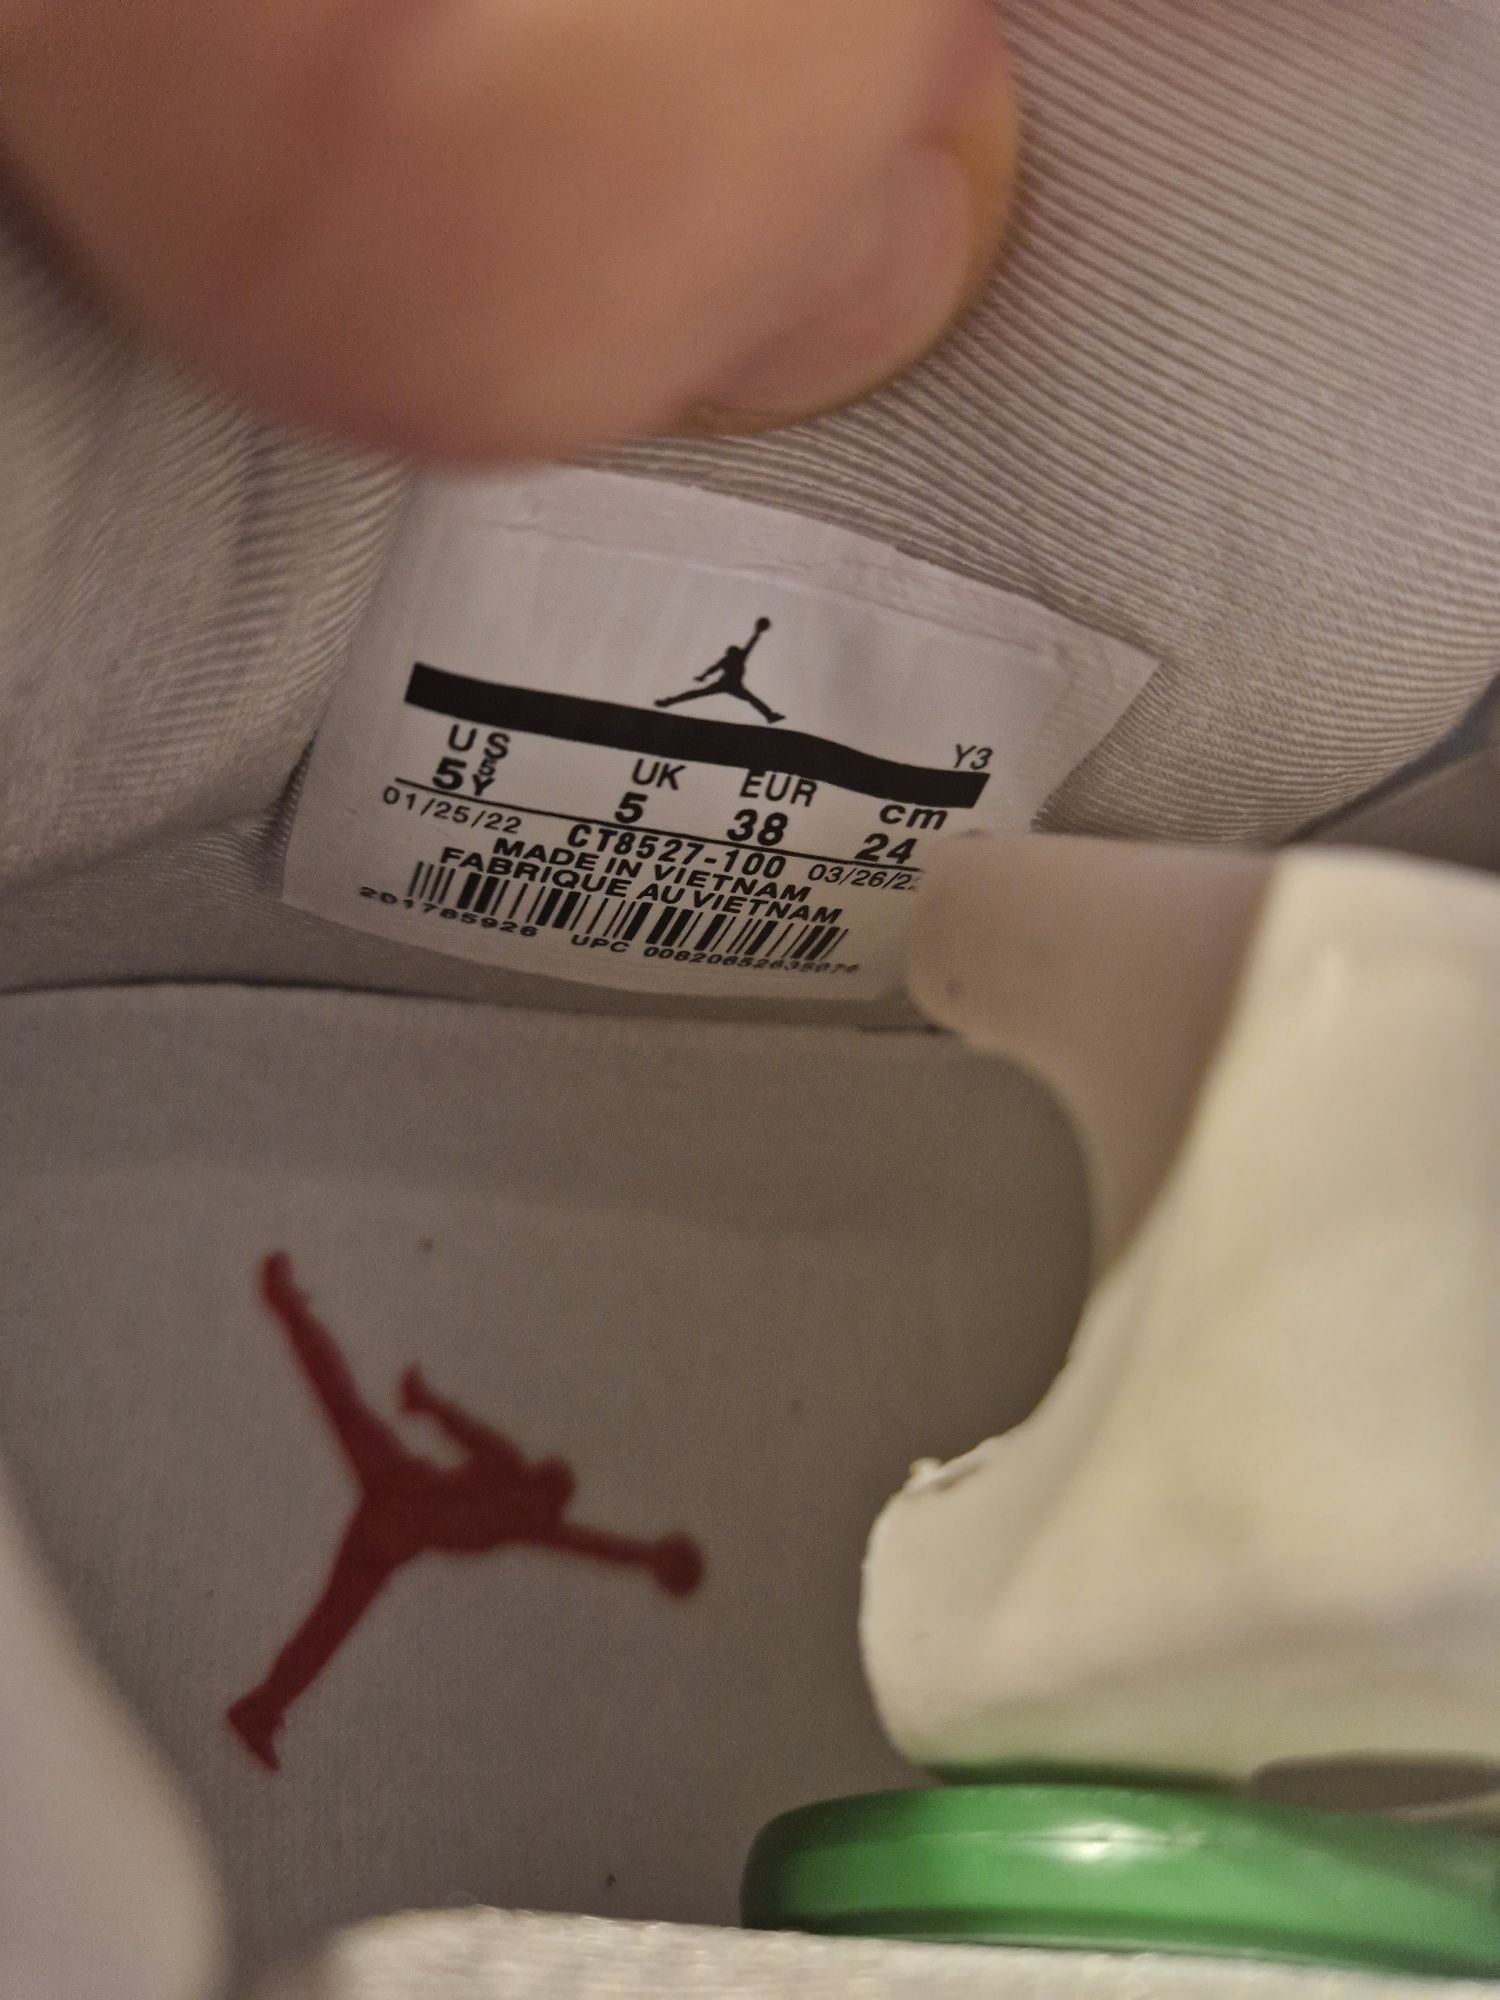 Nike Air Jordan 4 Oreo